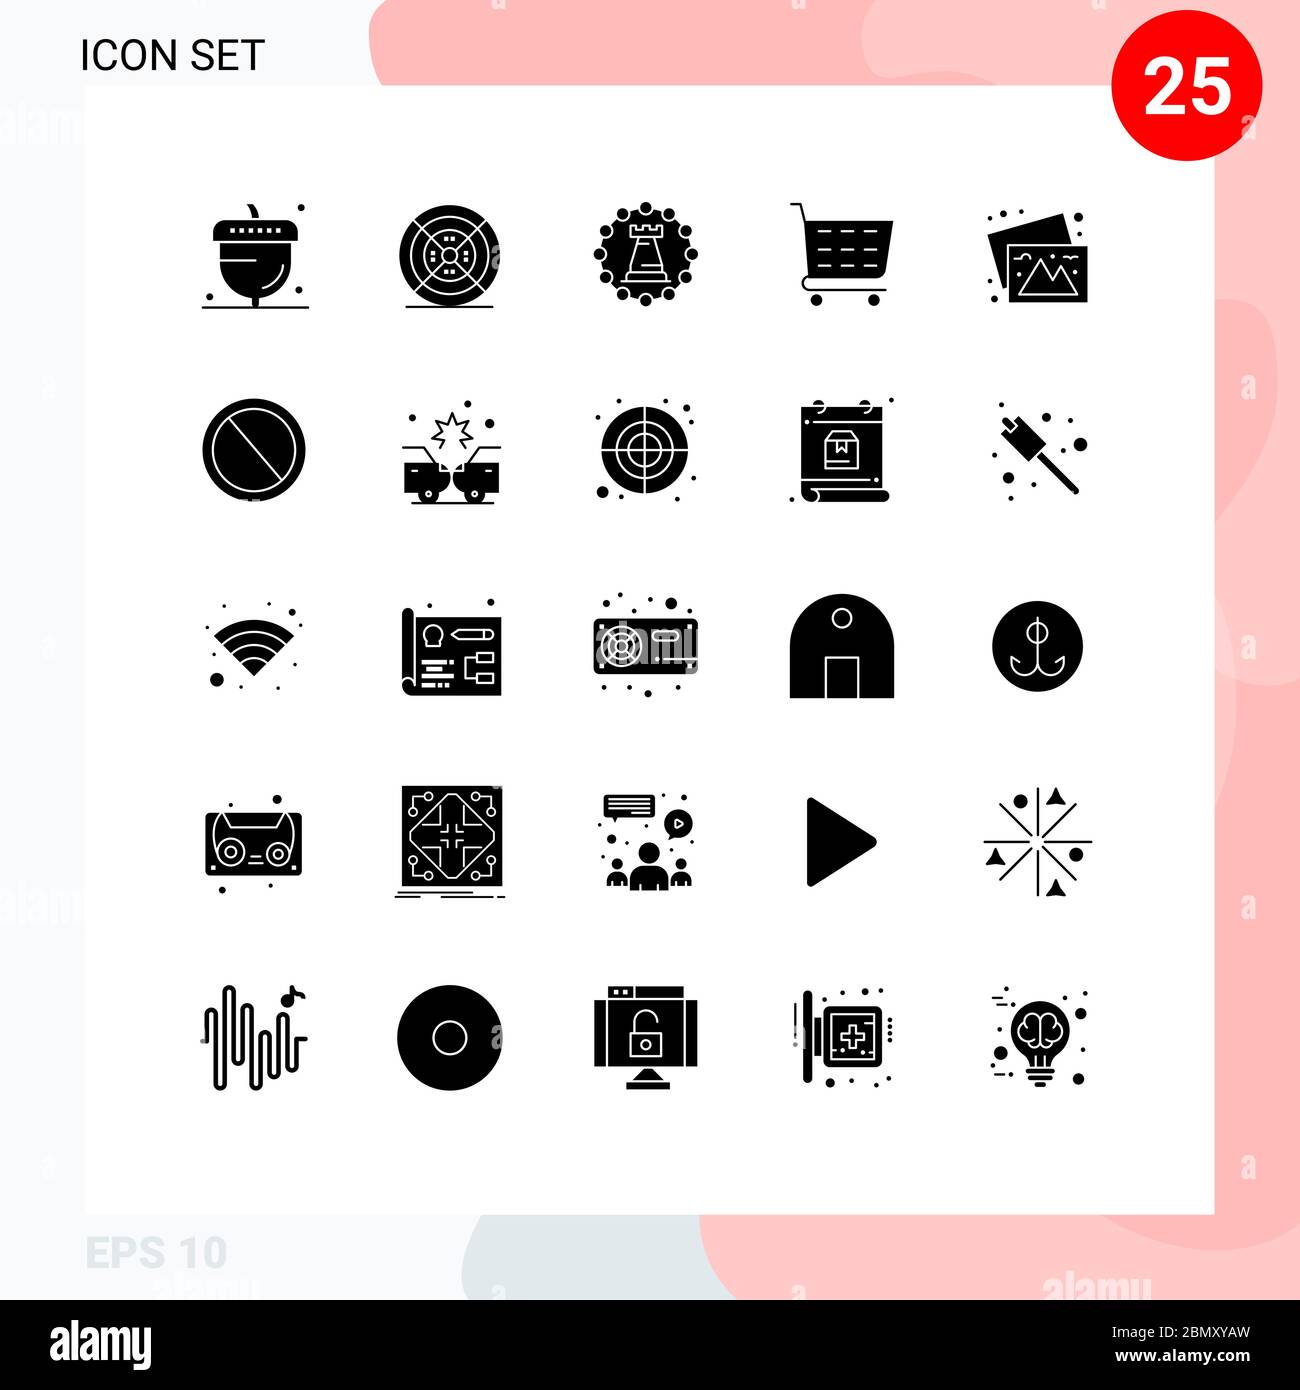 Pacchetto icone vettoriali di 25 simboli e insegne per fotocamere, negozi, stampe, ecommerce, rook elementi di progettazione vettoriale Illustrazione Vettoriale